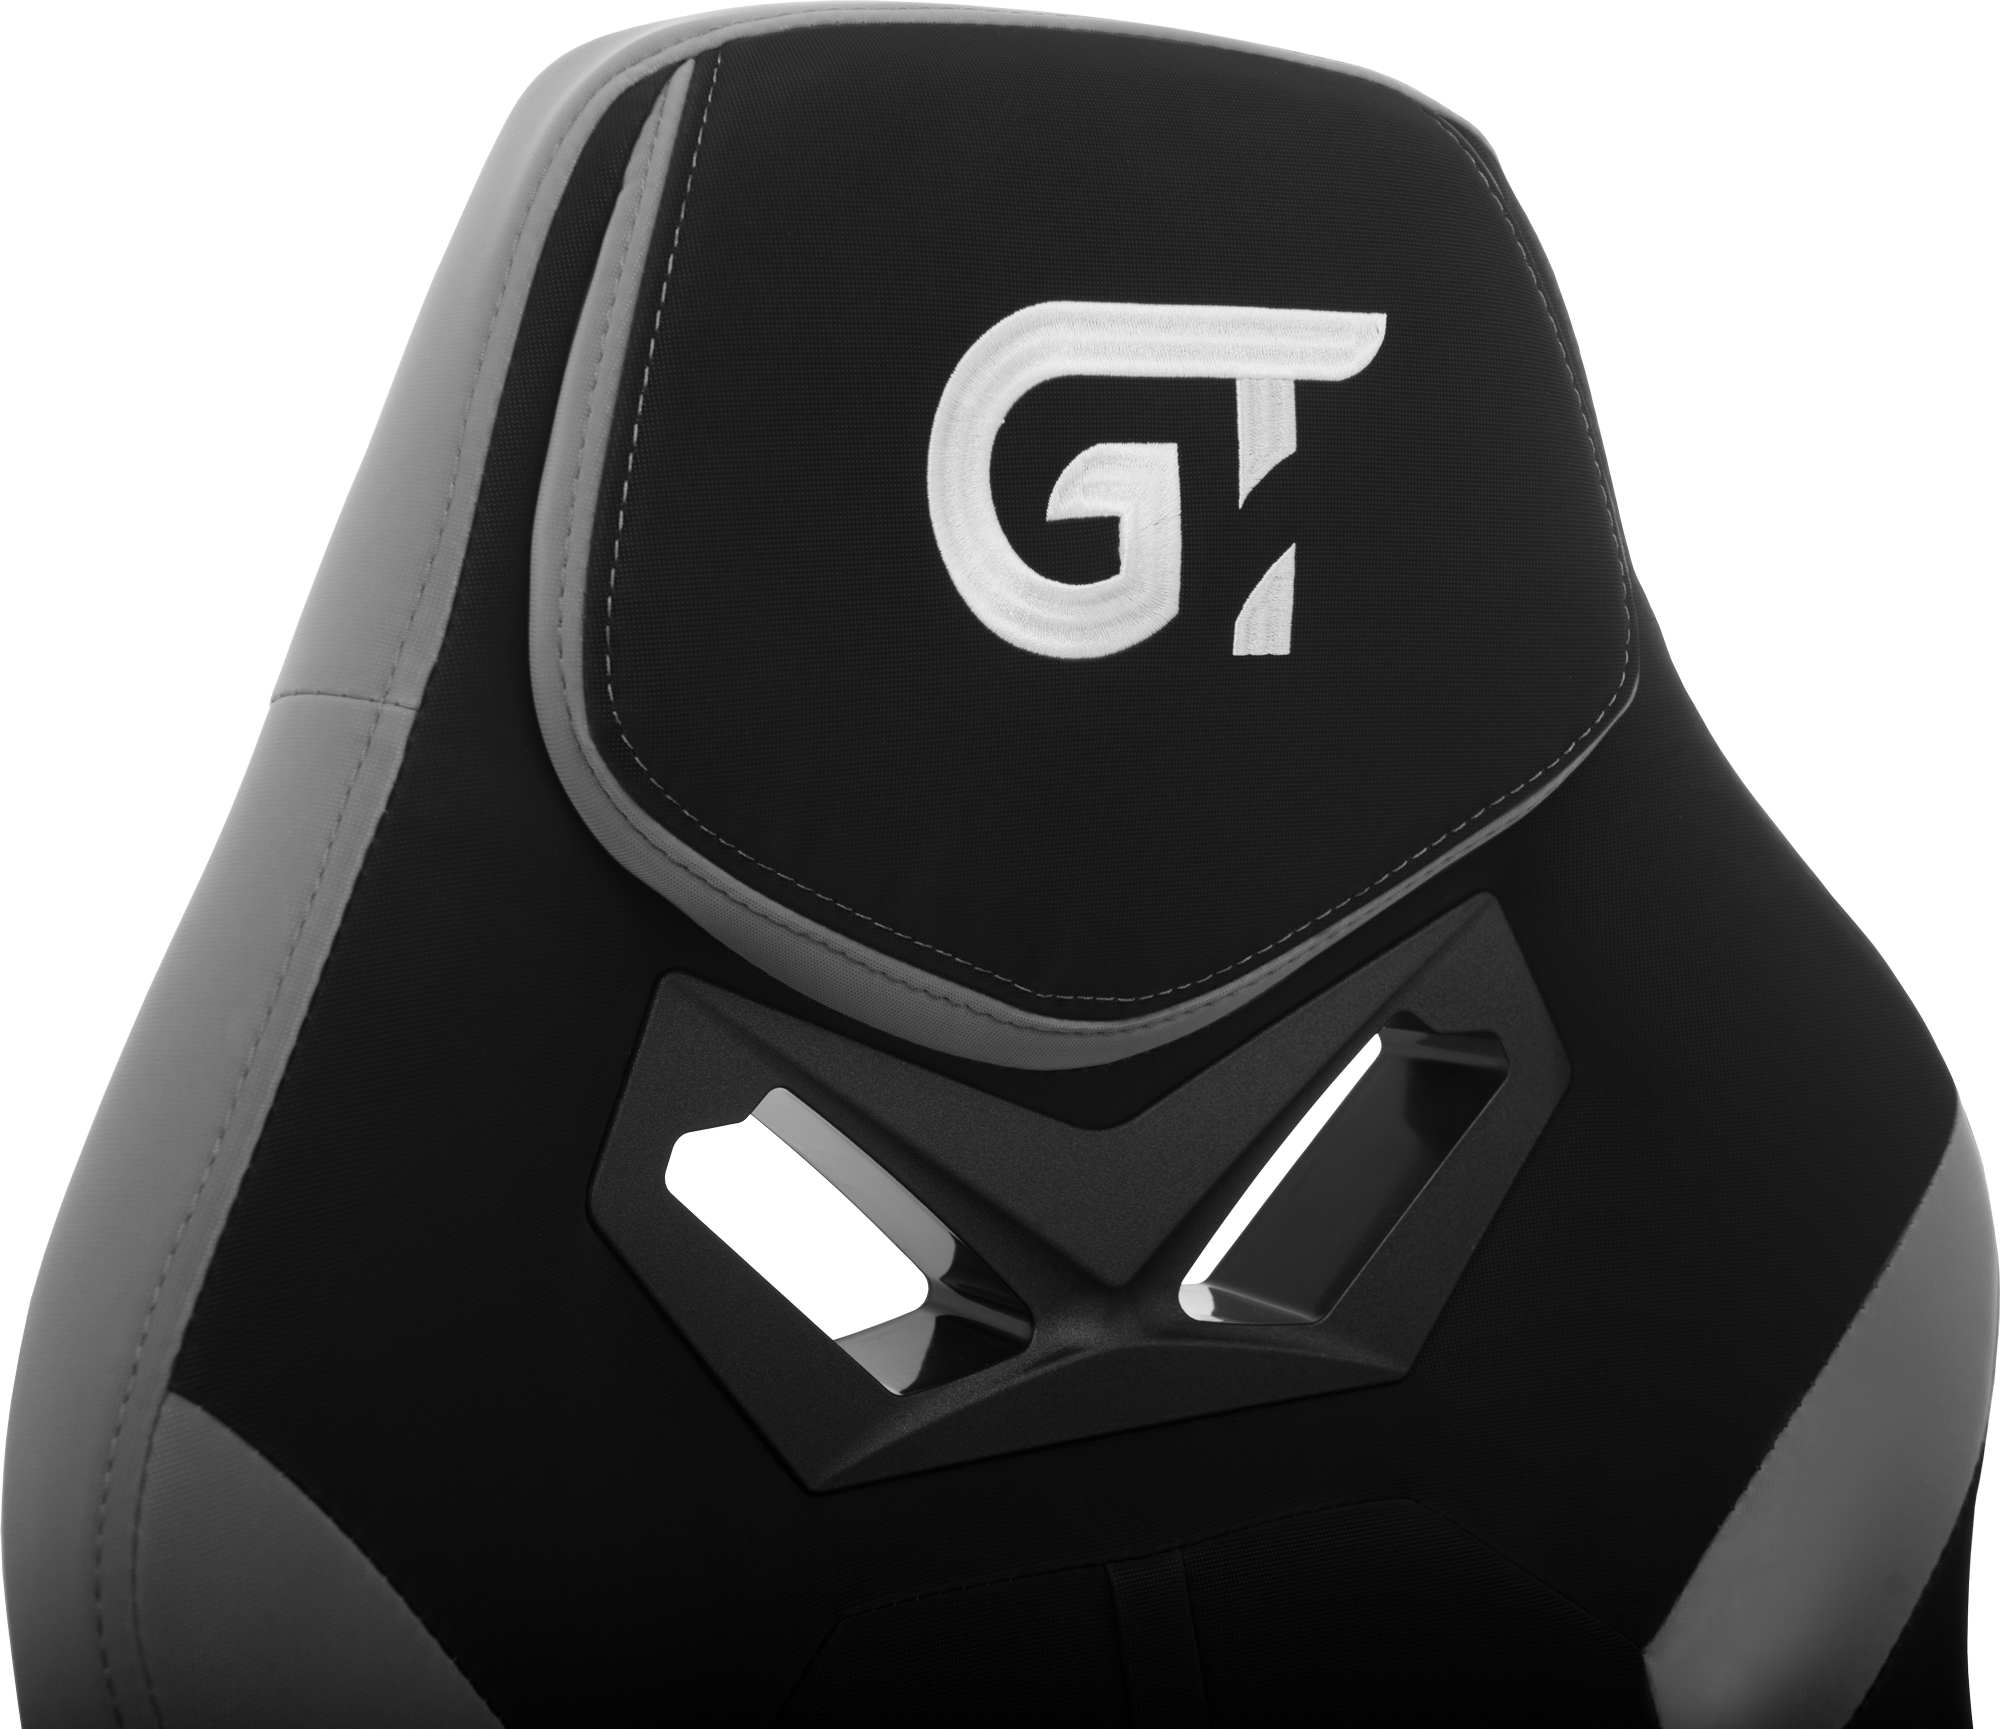 Геймерское кресло GT Racer черное с серым (X-2656 Black/Gray) - фото 10